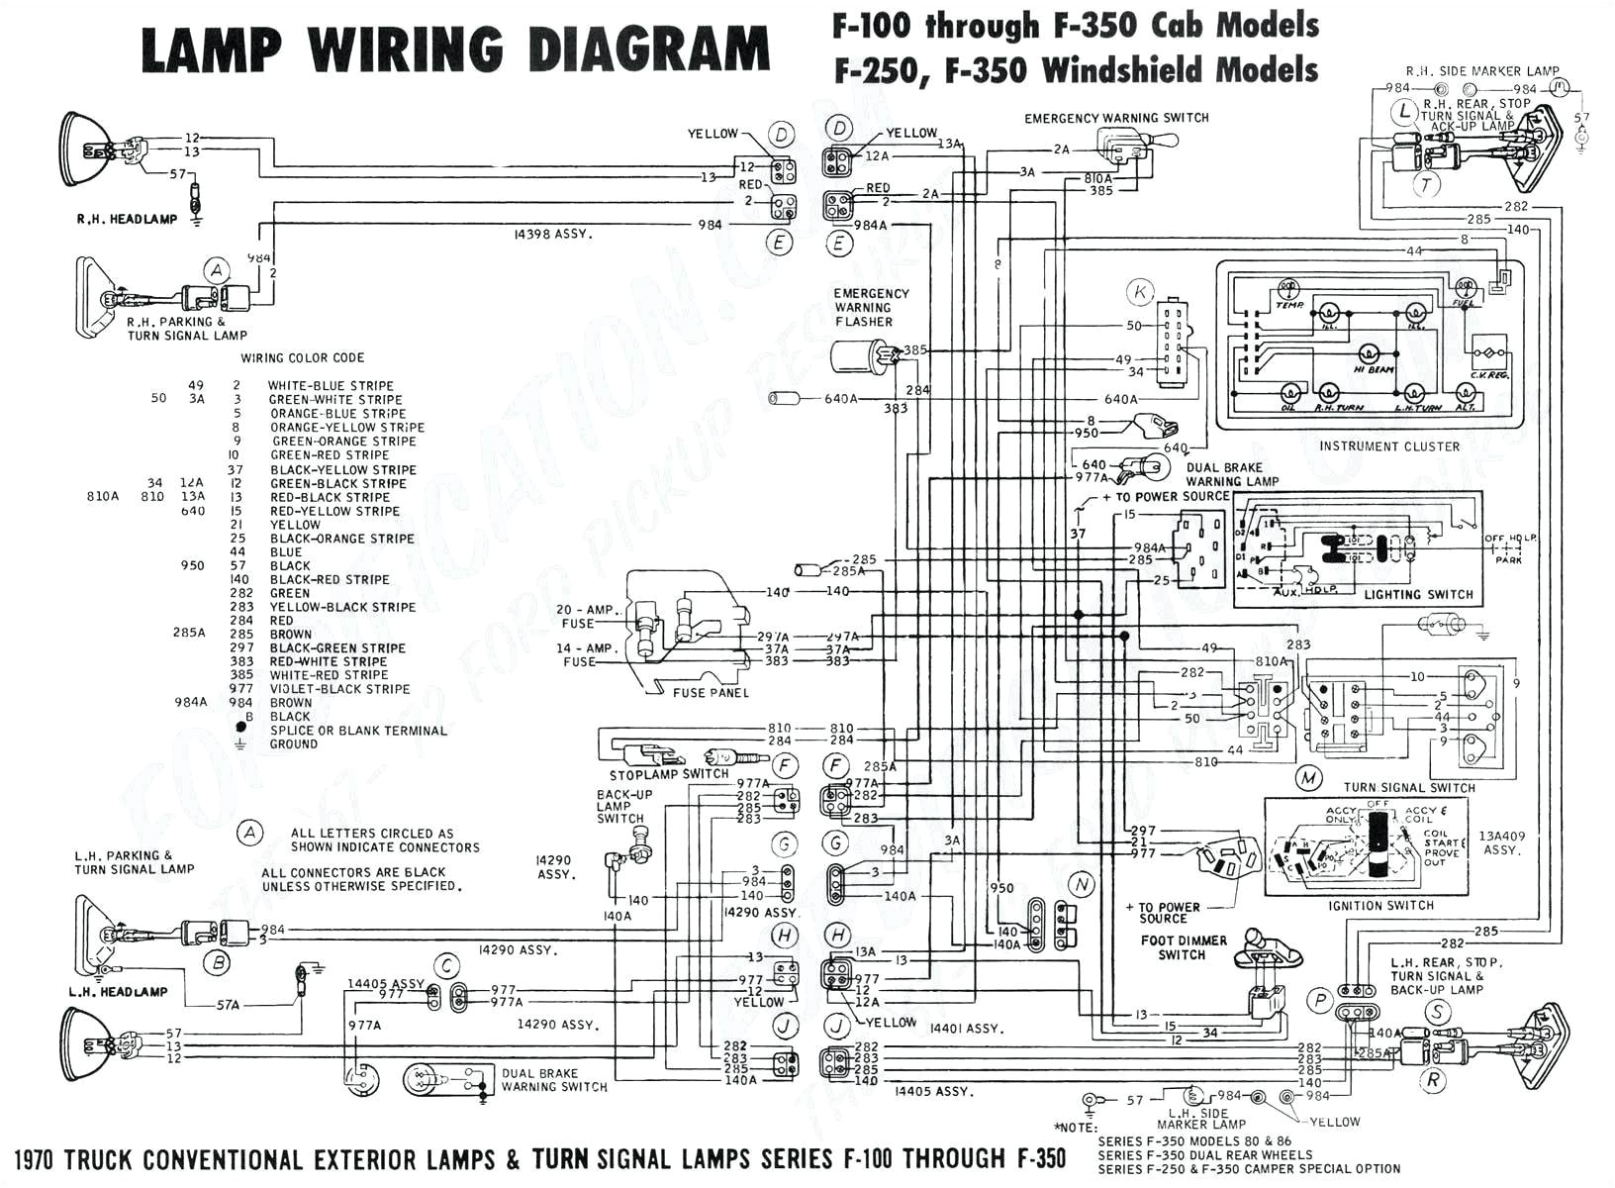 1969 camaro wiring schematics free download diagram schematic 67 vw wiring harness free download diagram schematic